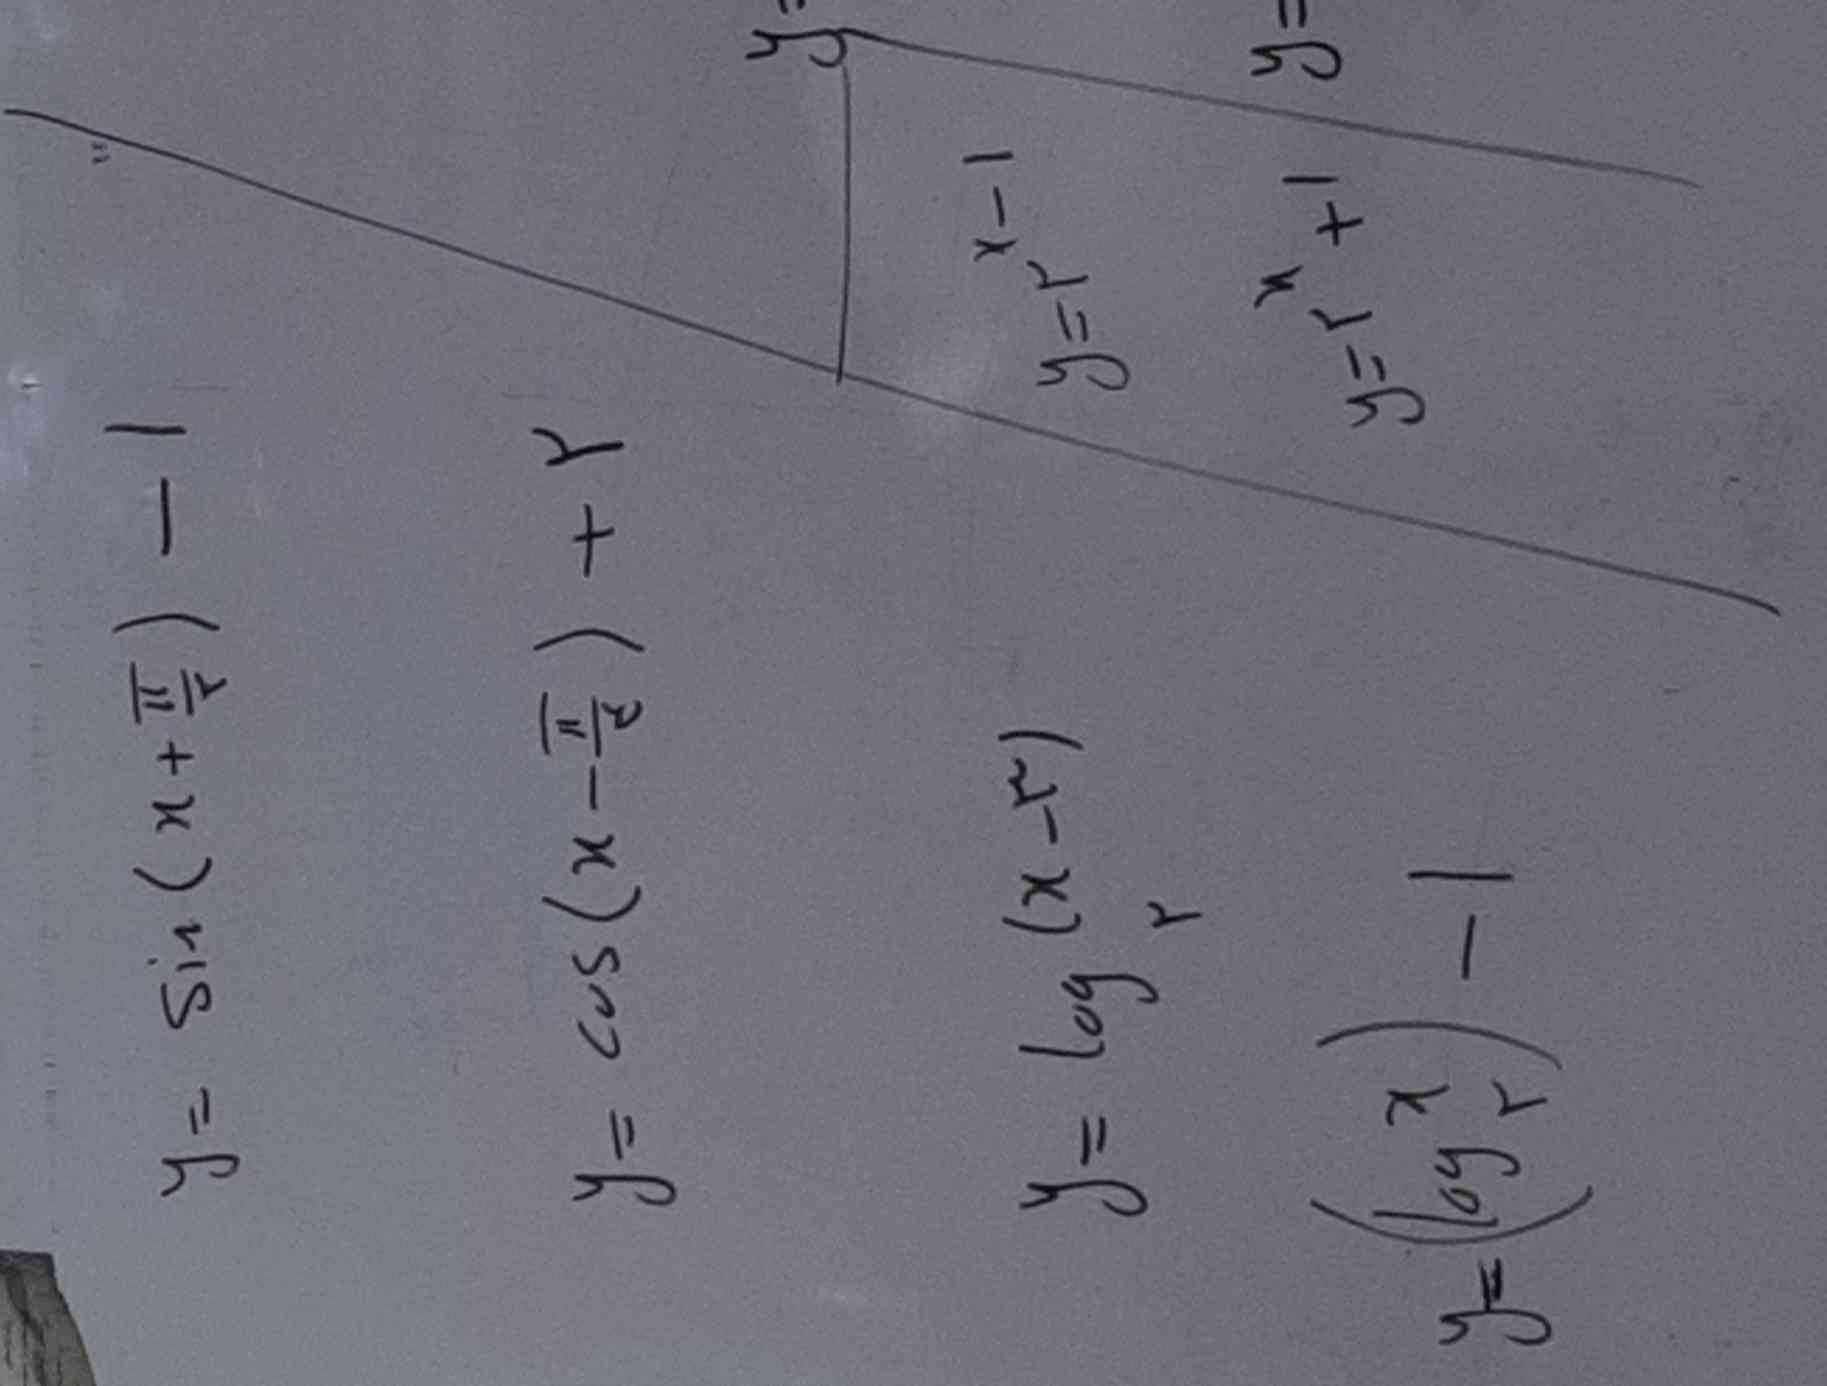 سلام ممنون میشم اگه این سوالاته ریاضیرو با توضیح برام حل کنید🙏